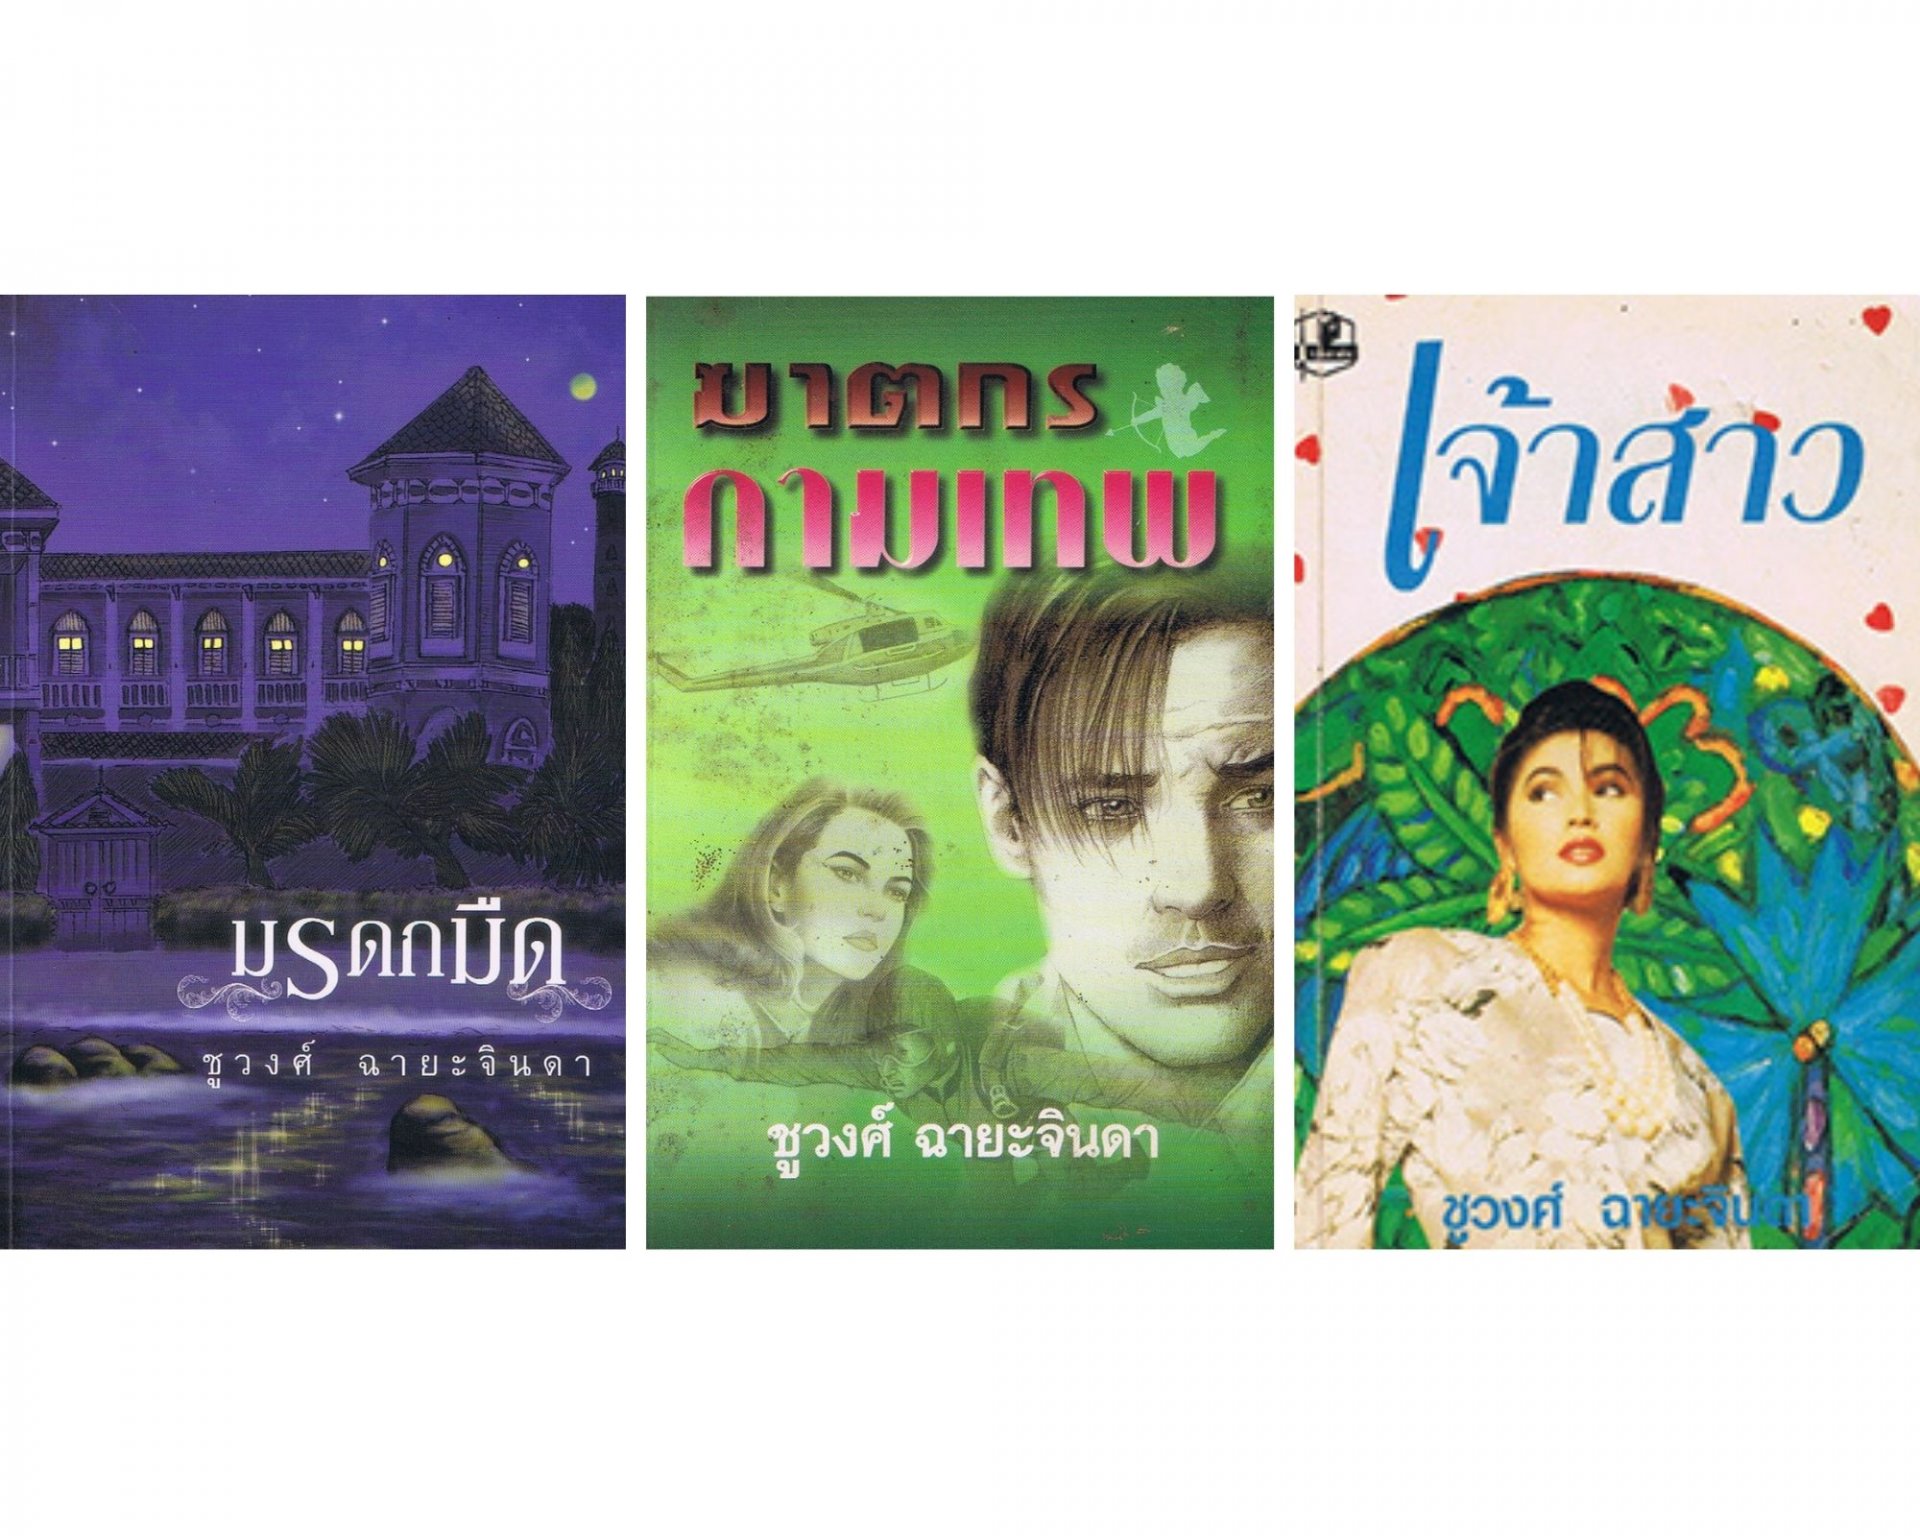 นวนิยายไทยโดย ชูวงศ์ ฉายะจินดา